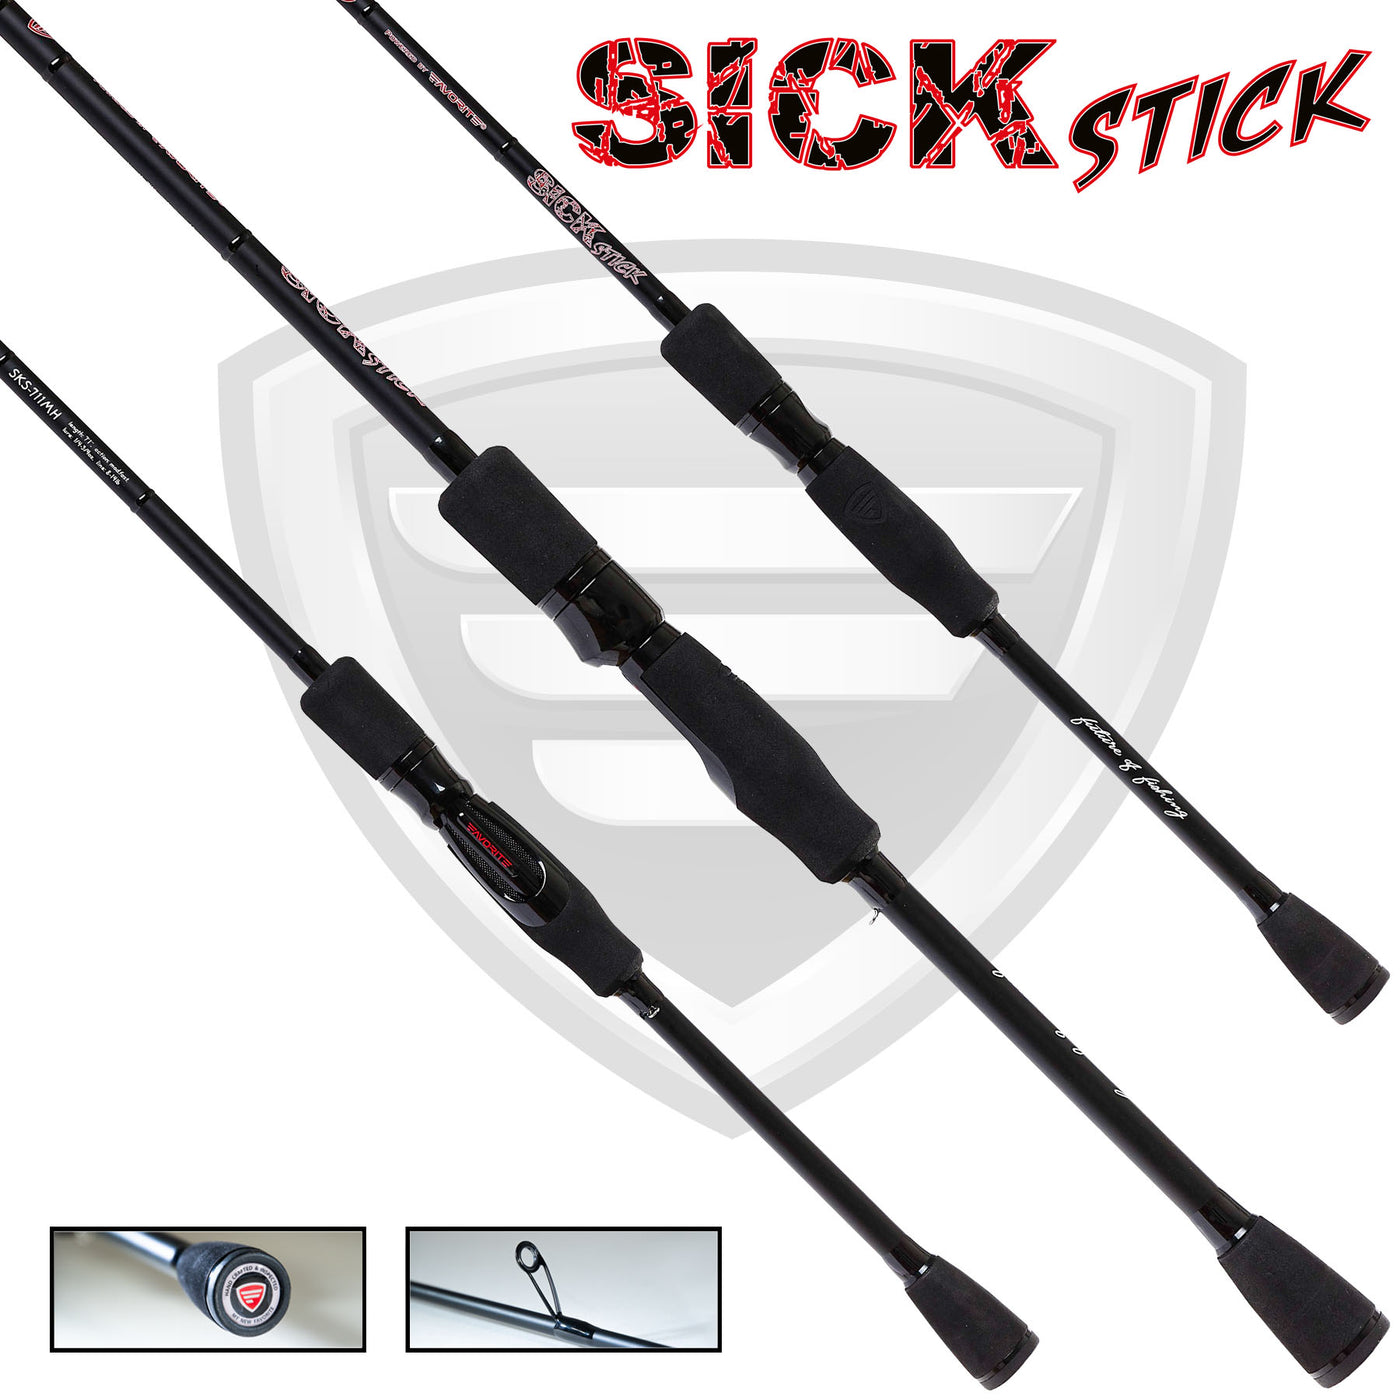 Sick Stick Spinning Rod Favorite Fishing